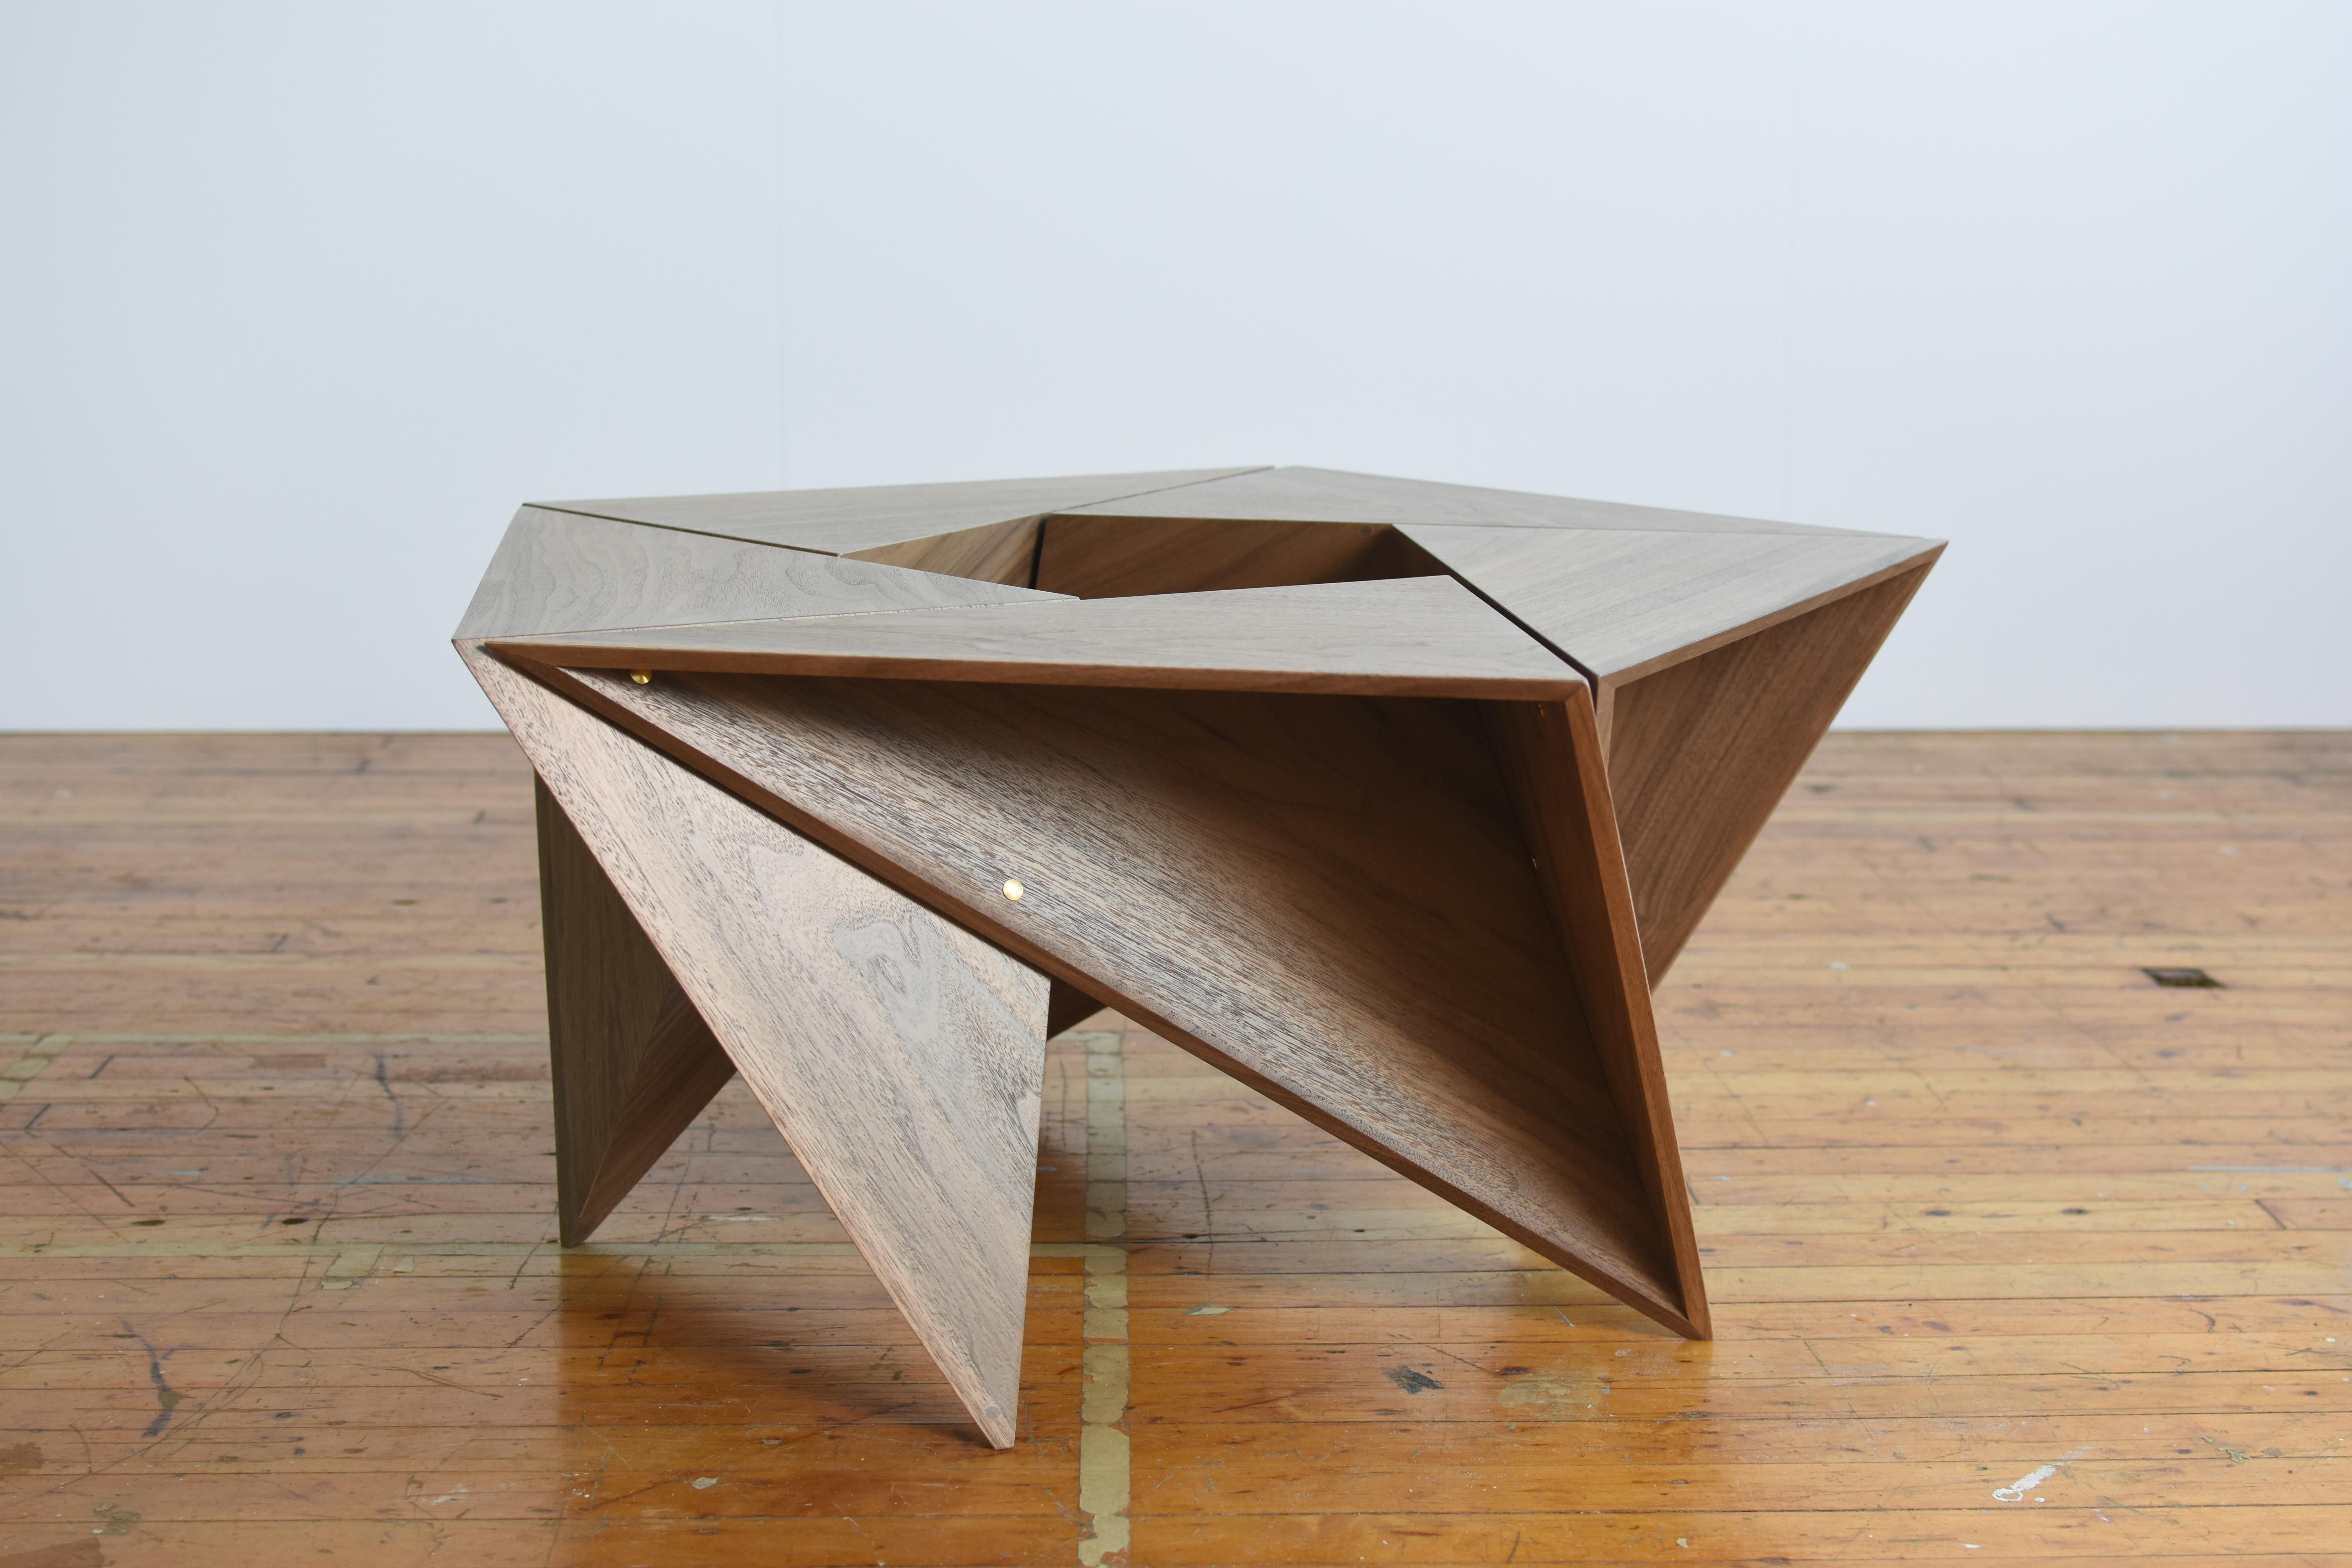 Dieser fünfeckige Tisch besteht aus 5 identischen Tetraedern mit offenen Flächen. Die mit Messingbolzen zusammengehaltene Einheit kann zerlegt und für einen kompakten Transport ineinander geschoben werden.

Das Bild hier ist eine Nussbaumsperrholz